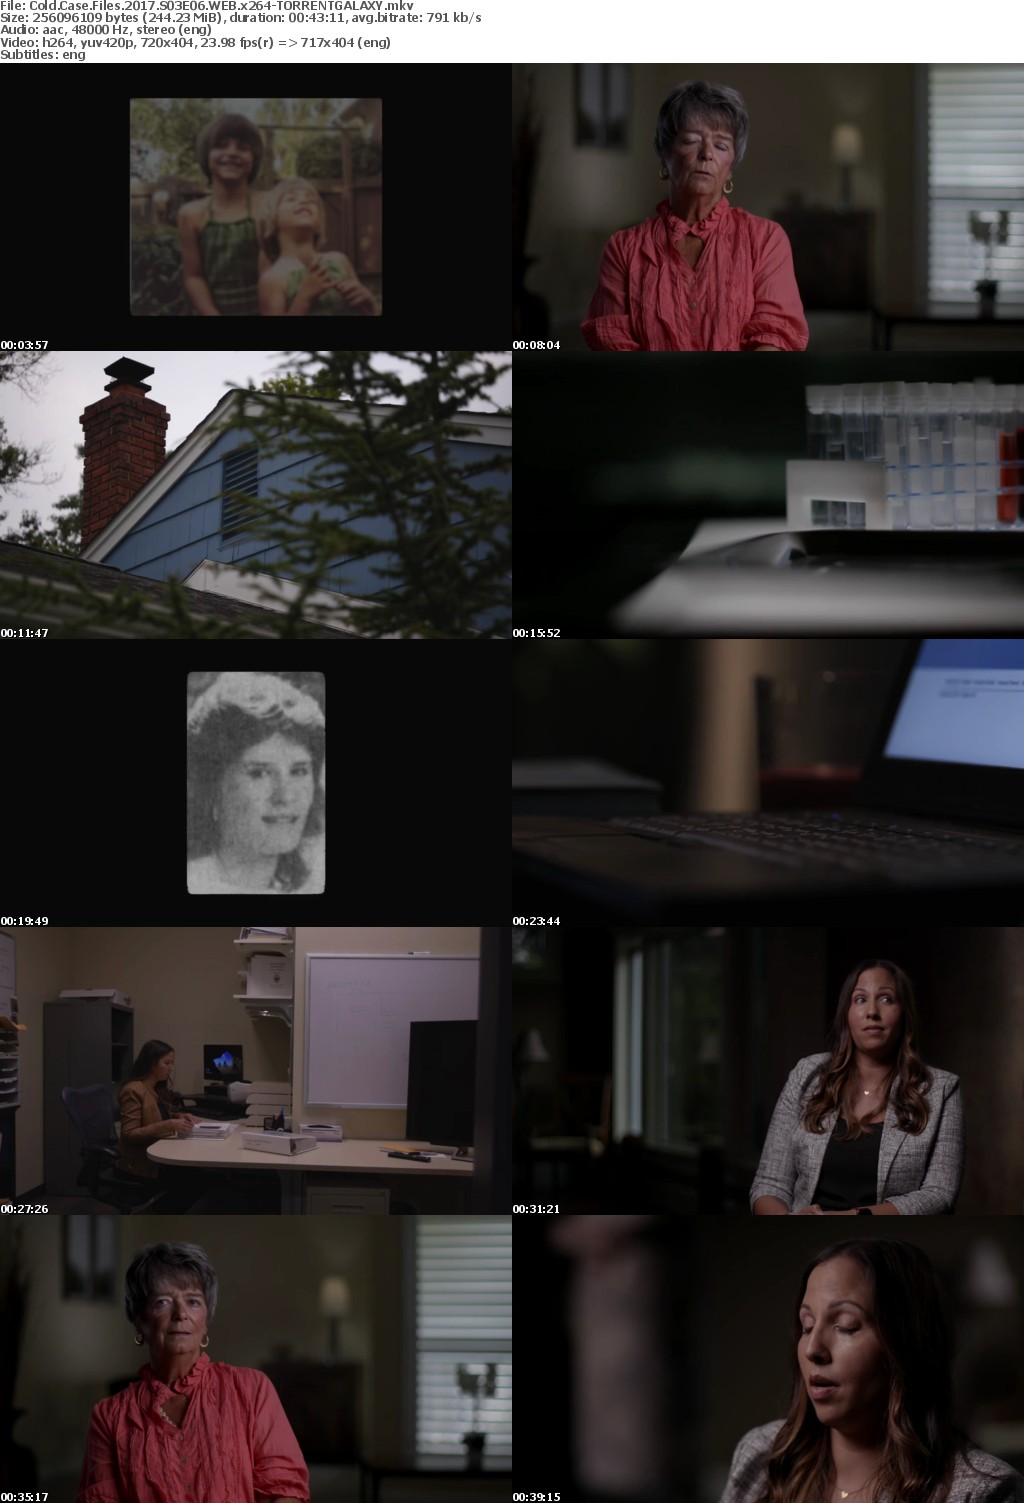 Cold Case Files 2017 S03E06 WEB x264-GALAXY